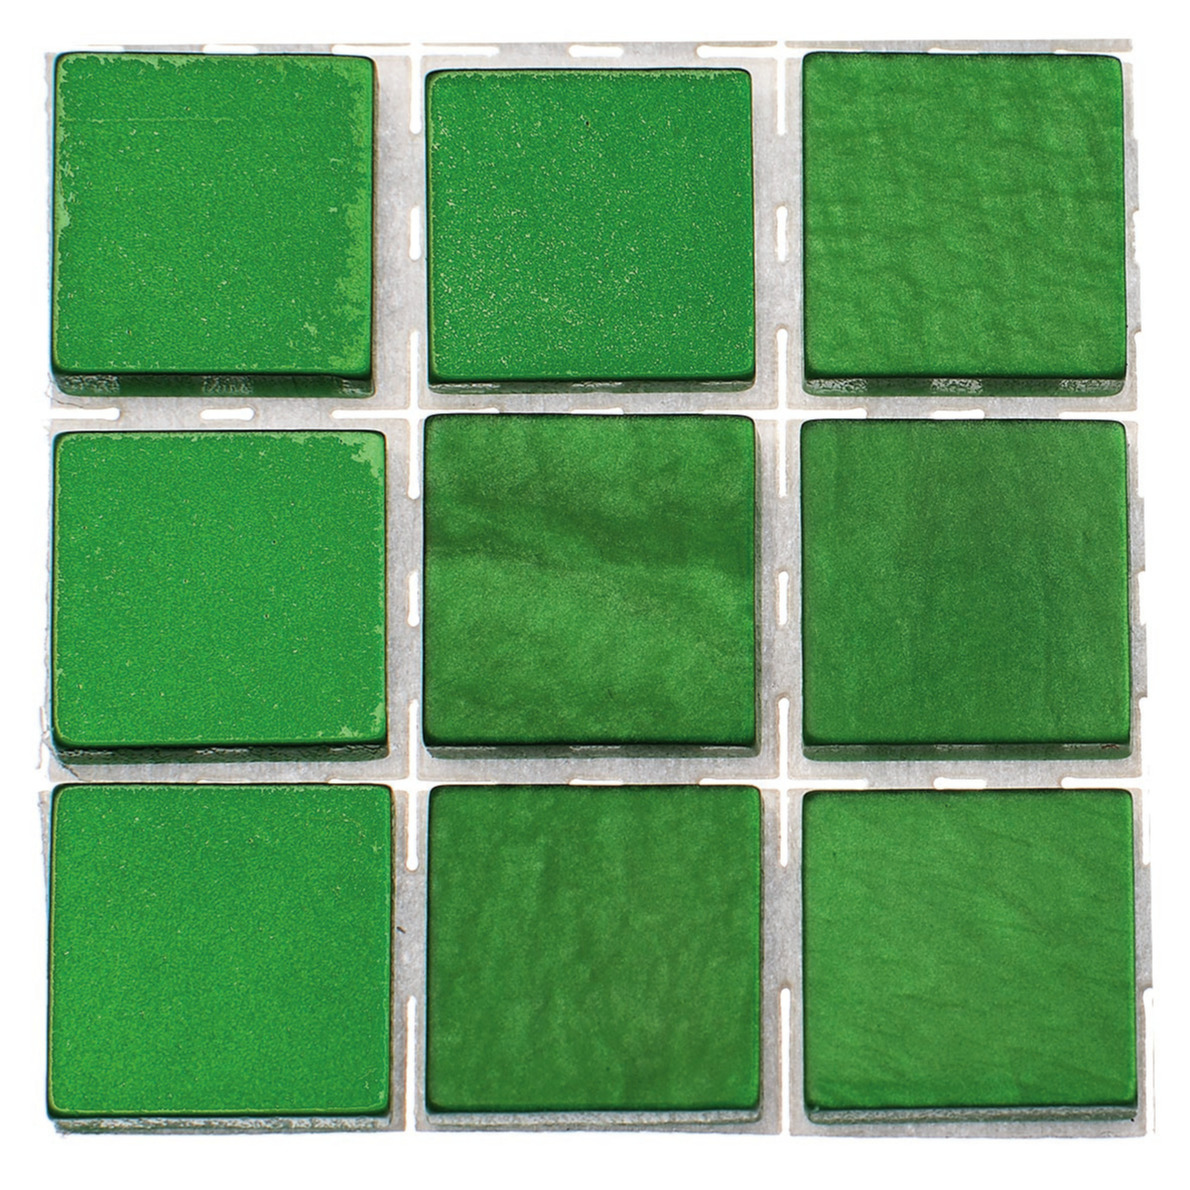 504x stuks mozaieken maken steentjes/tegels kleur groen 10 x 10 x 2 mm -